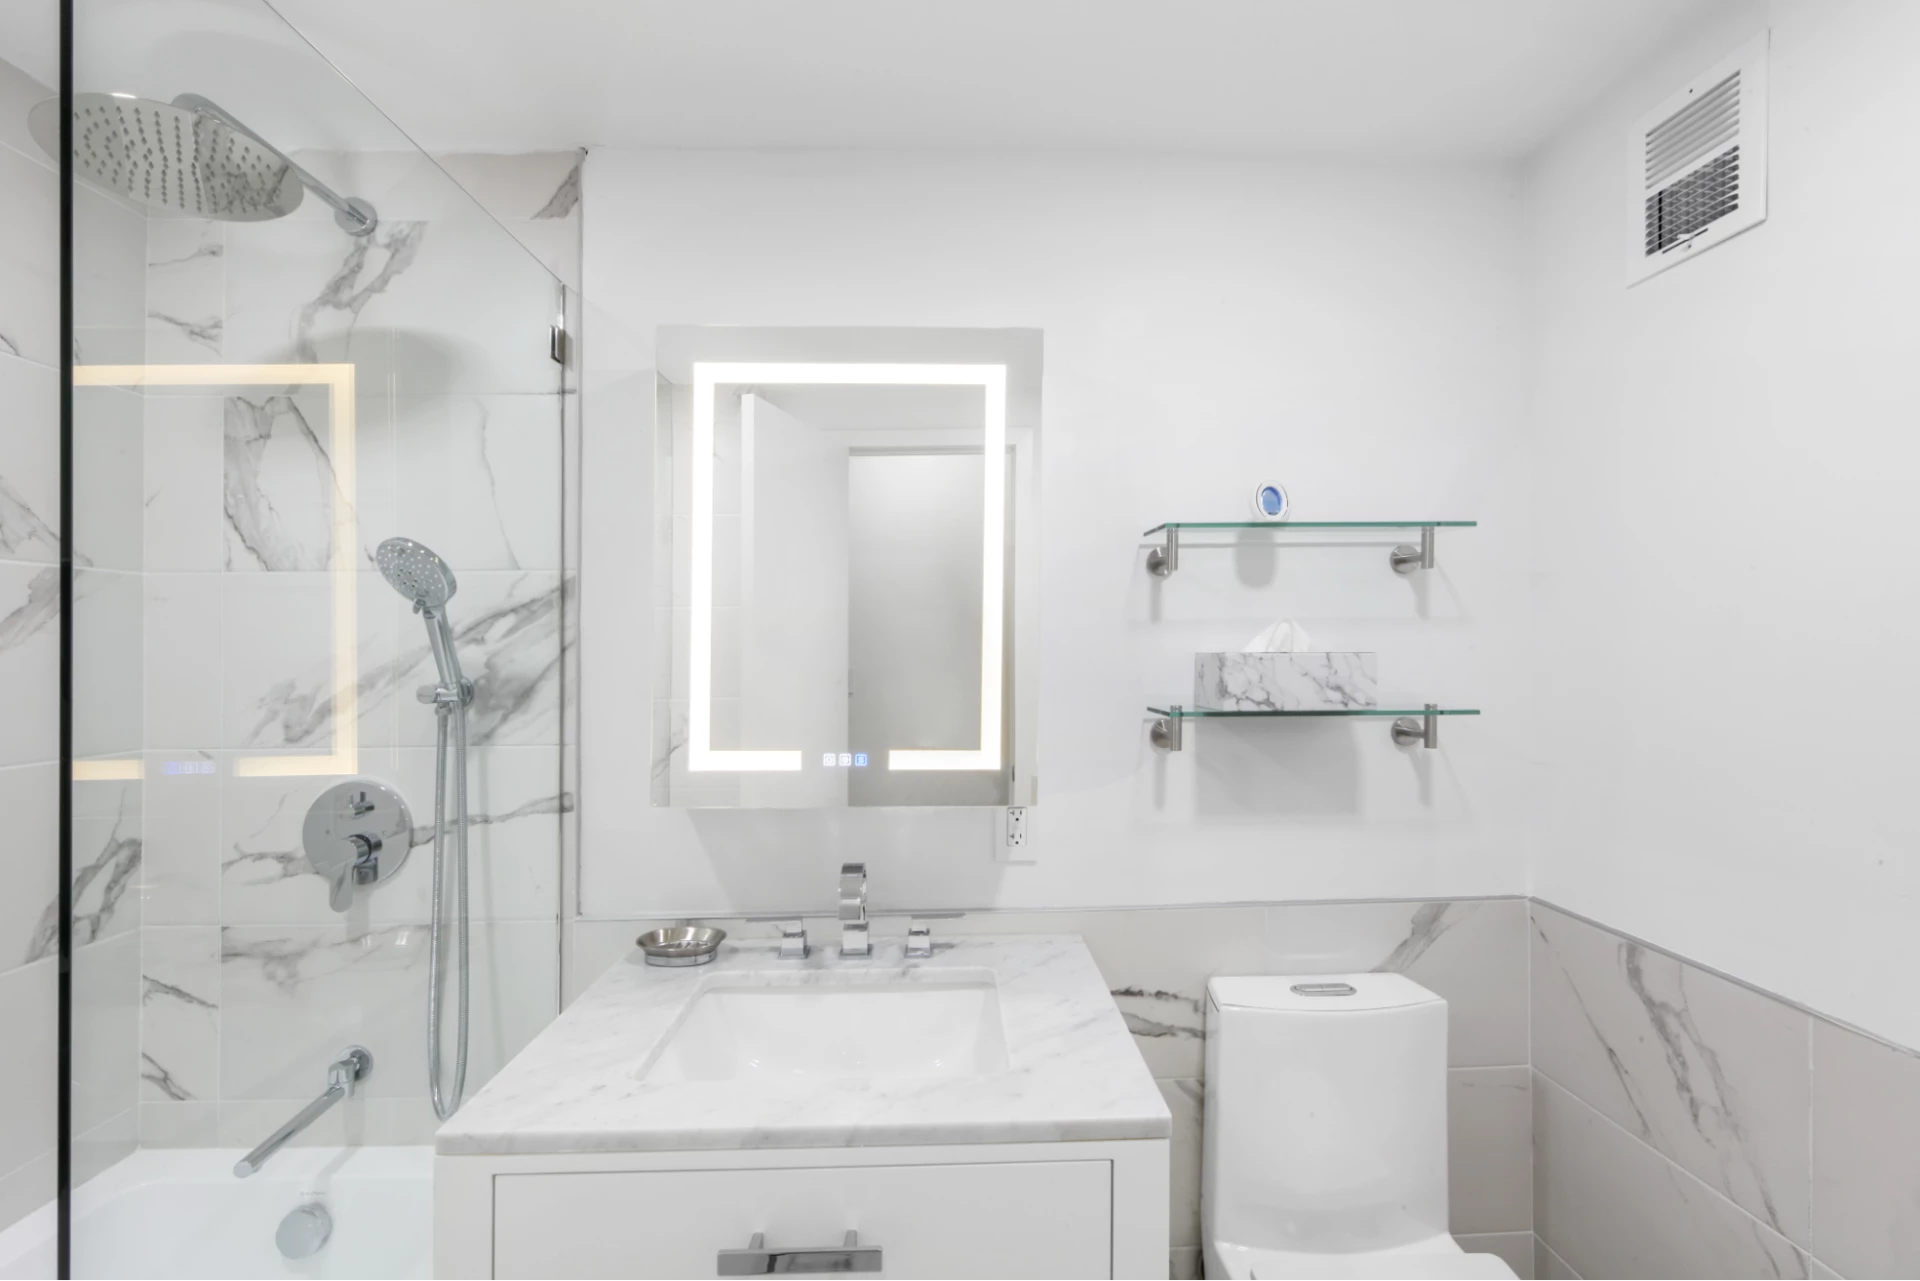 LED medicine cabinet, floating wall shelves, frameless shower door